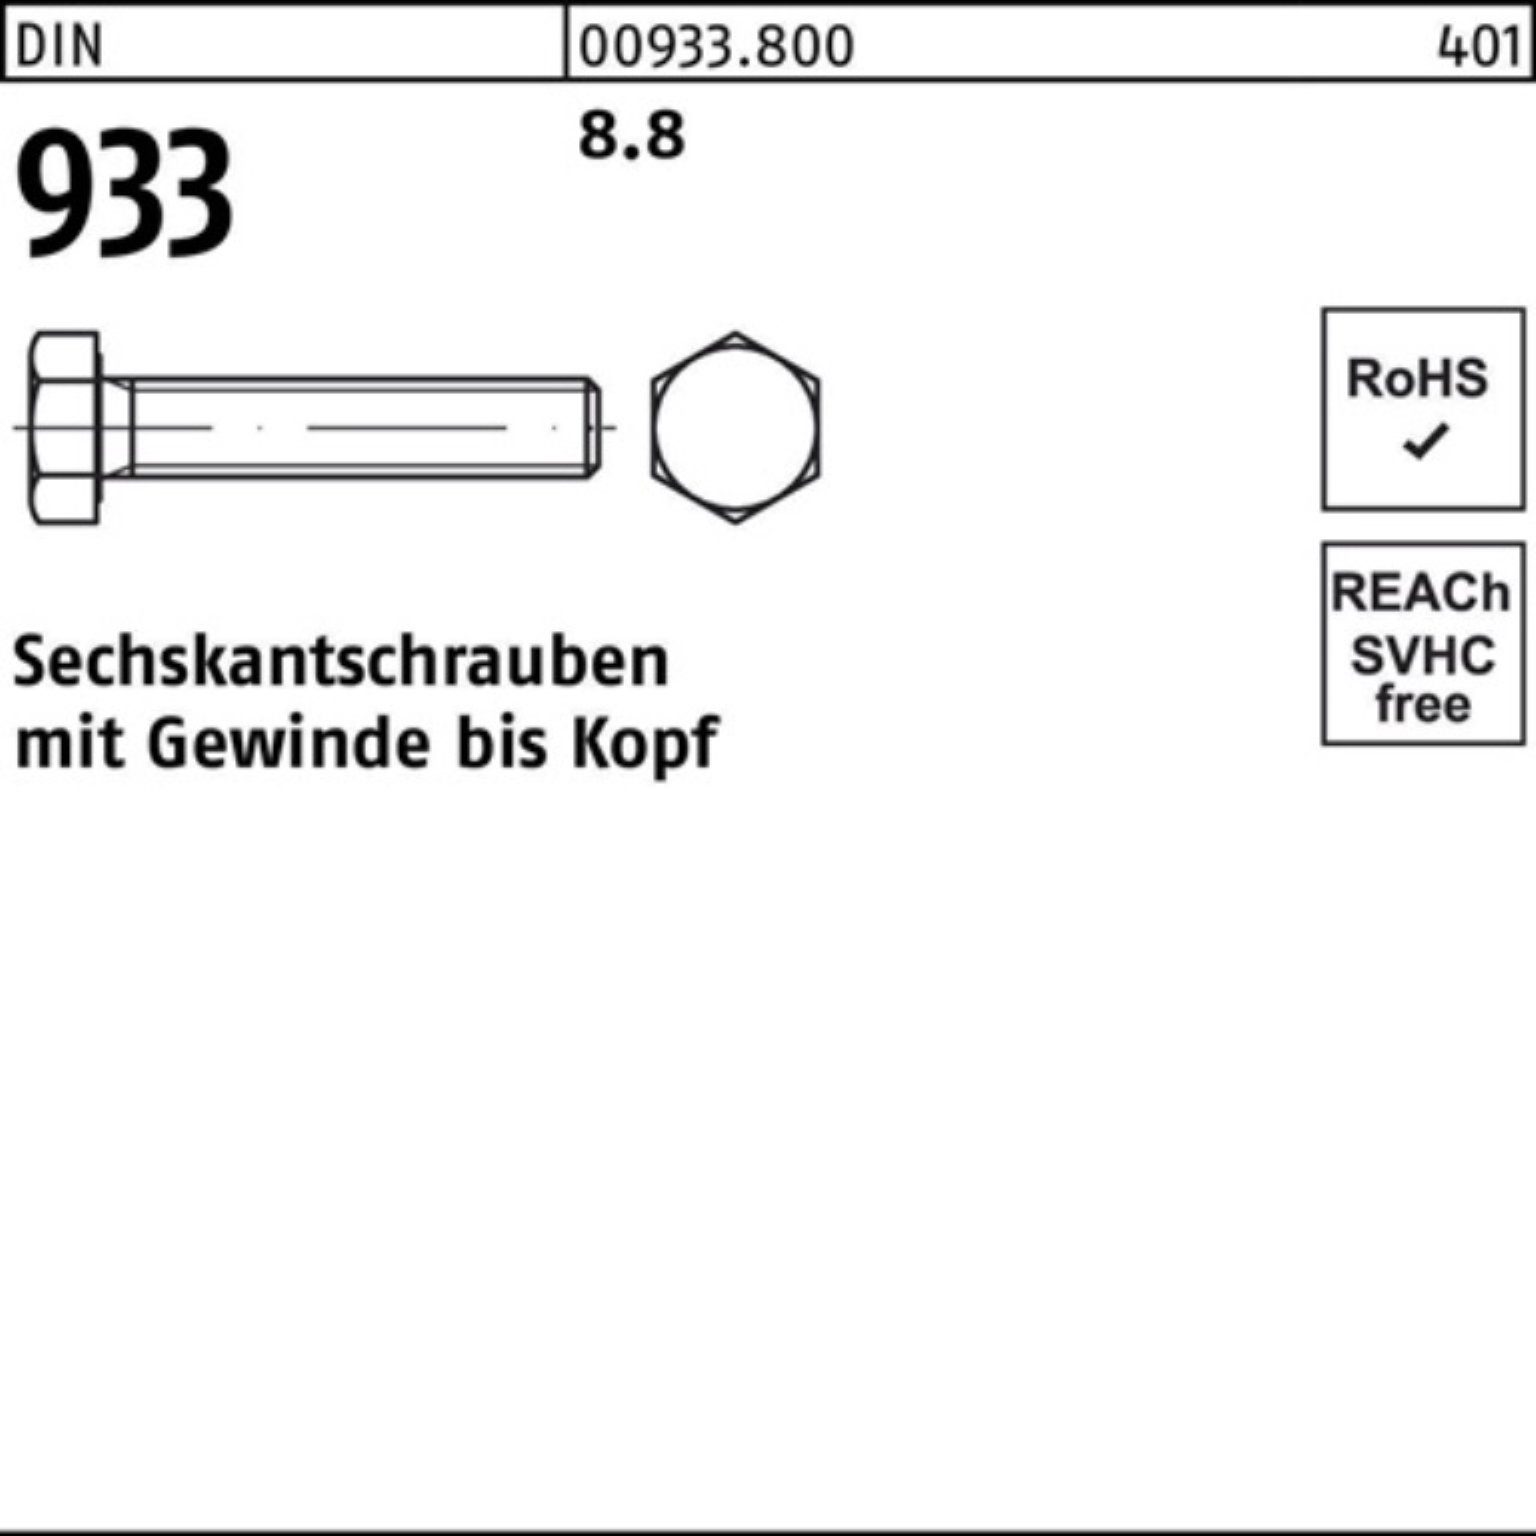 Reyher Sechskantschraube 100er 933 Stück 8.8 DIN Pack 1 Sechskantschraube M24x VG 250 DIN 933